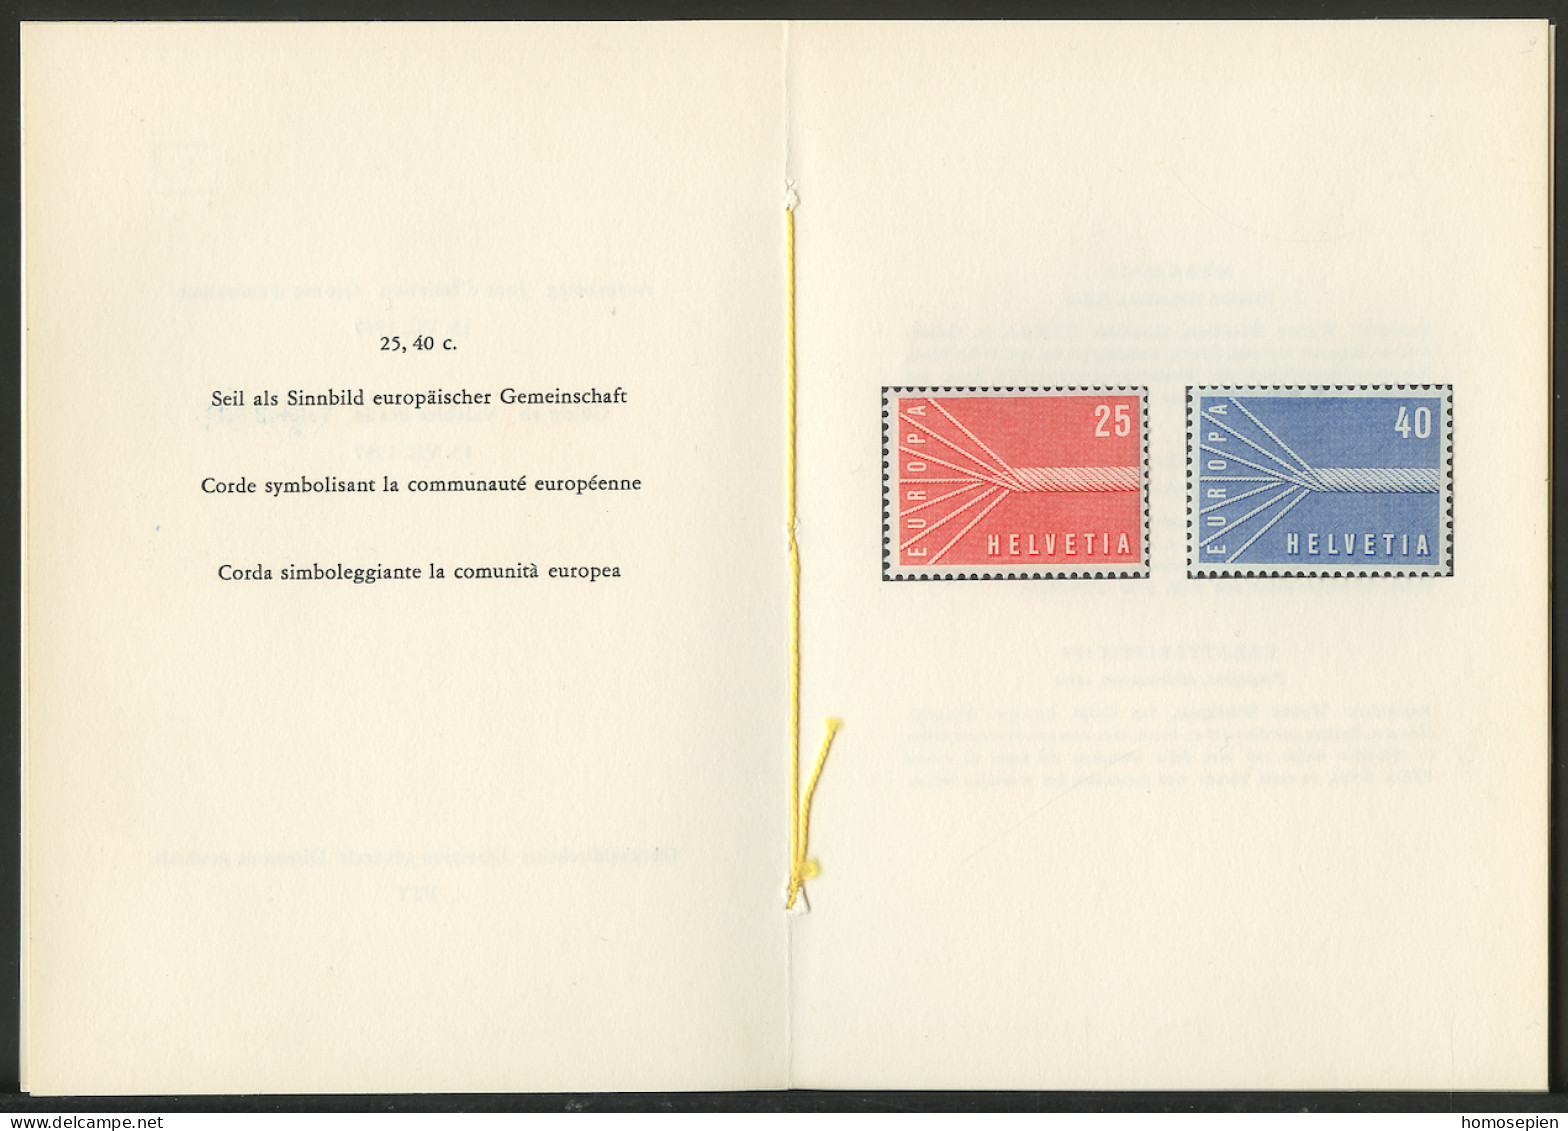 Europa CEPT 1957 Suisse - Switzerland - Schweiz Livret Y&T N°595 à 596 - Michel N°646y à 647y *** - 1957